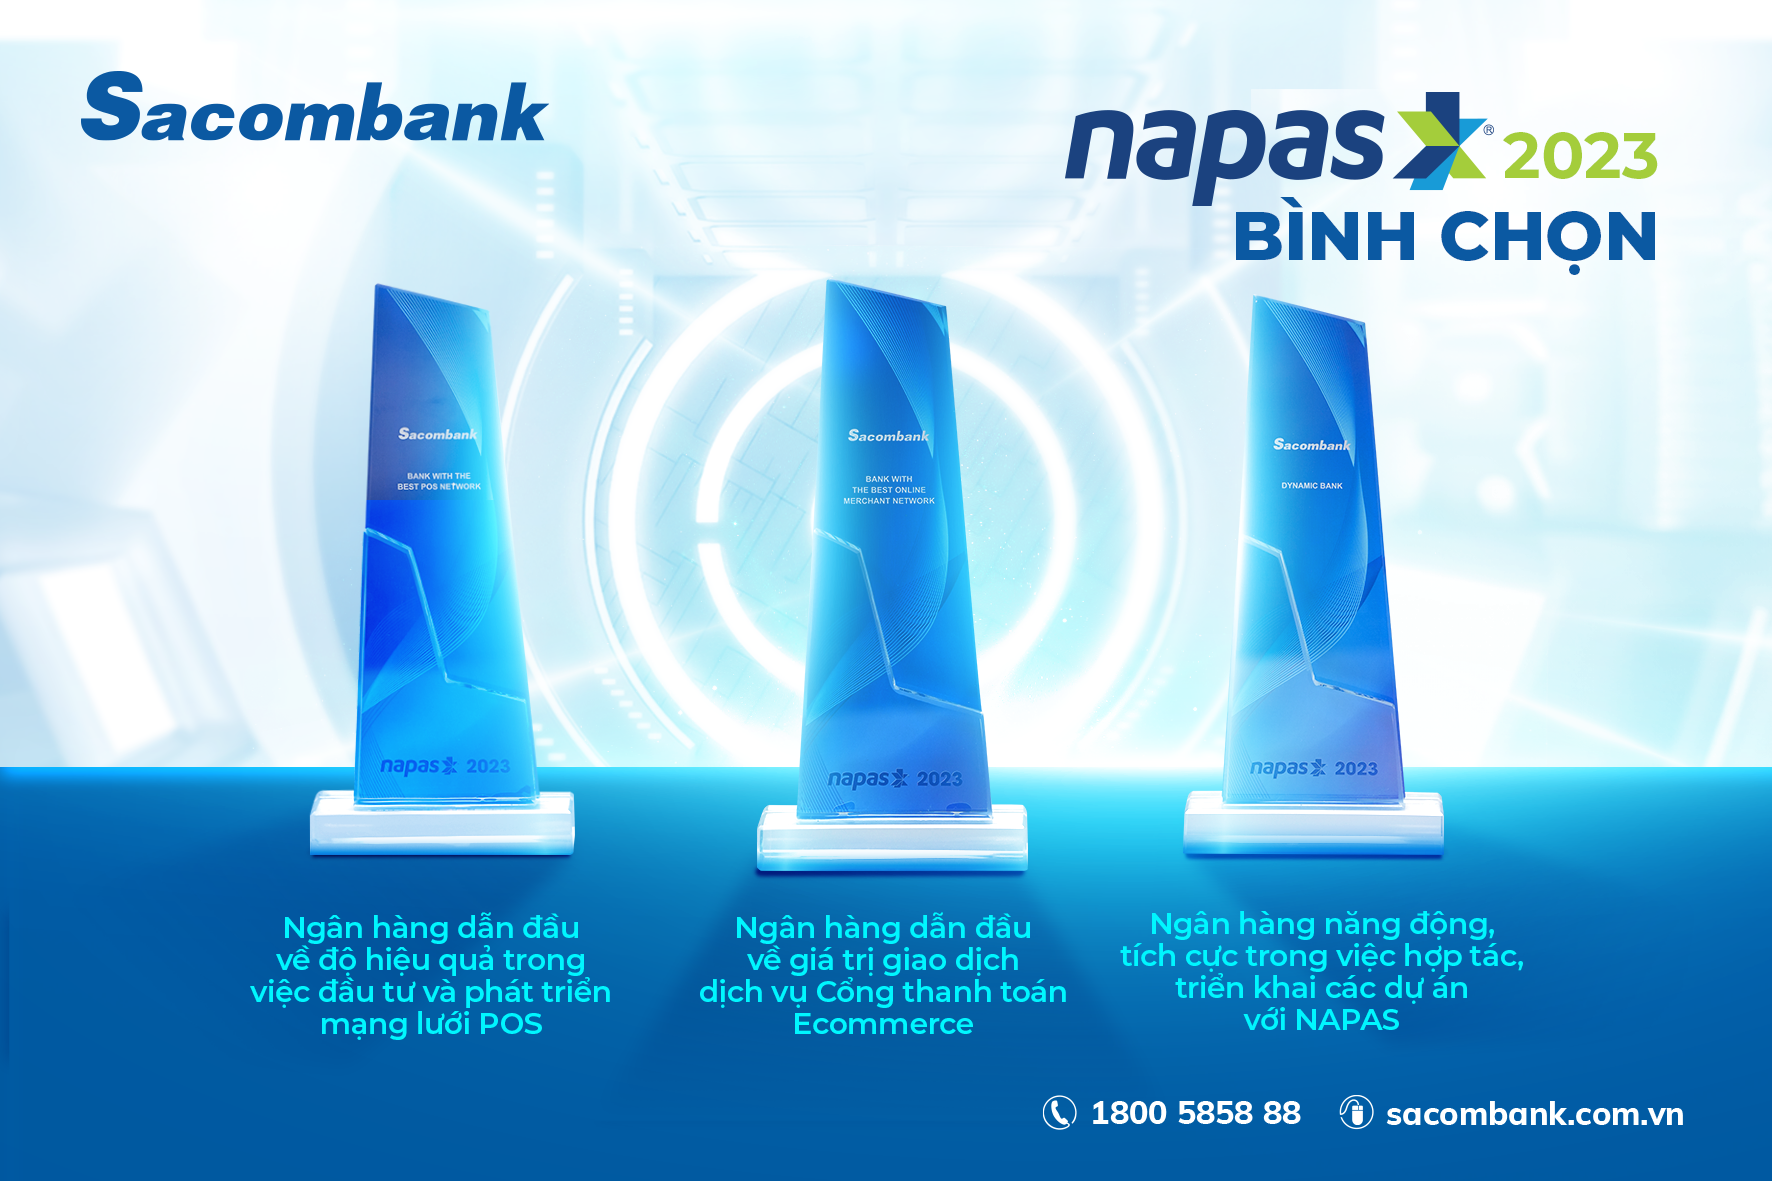 Napas vinh danh Sacombank với 3 giải thưởng - Ảnh 2.